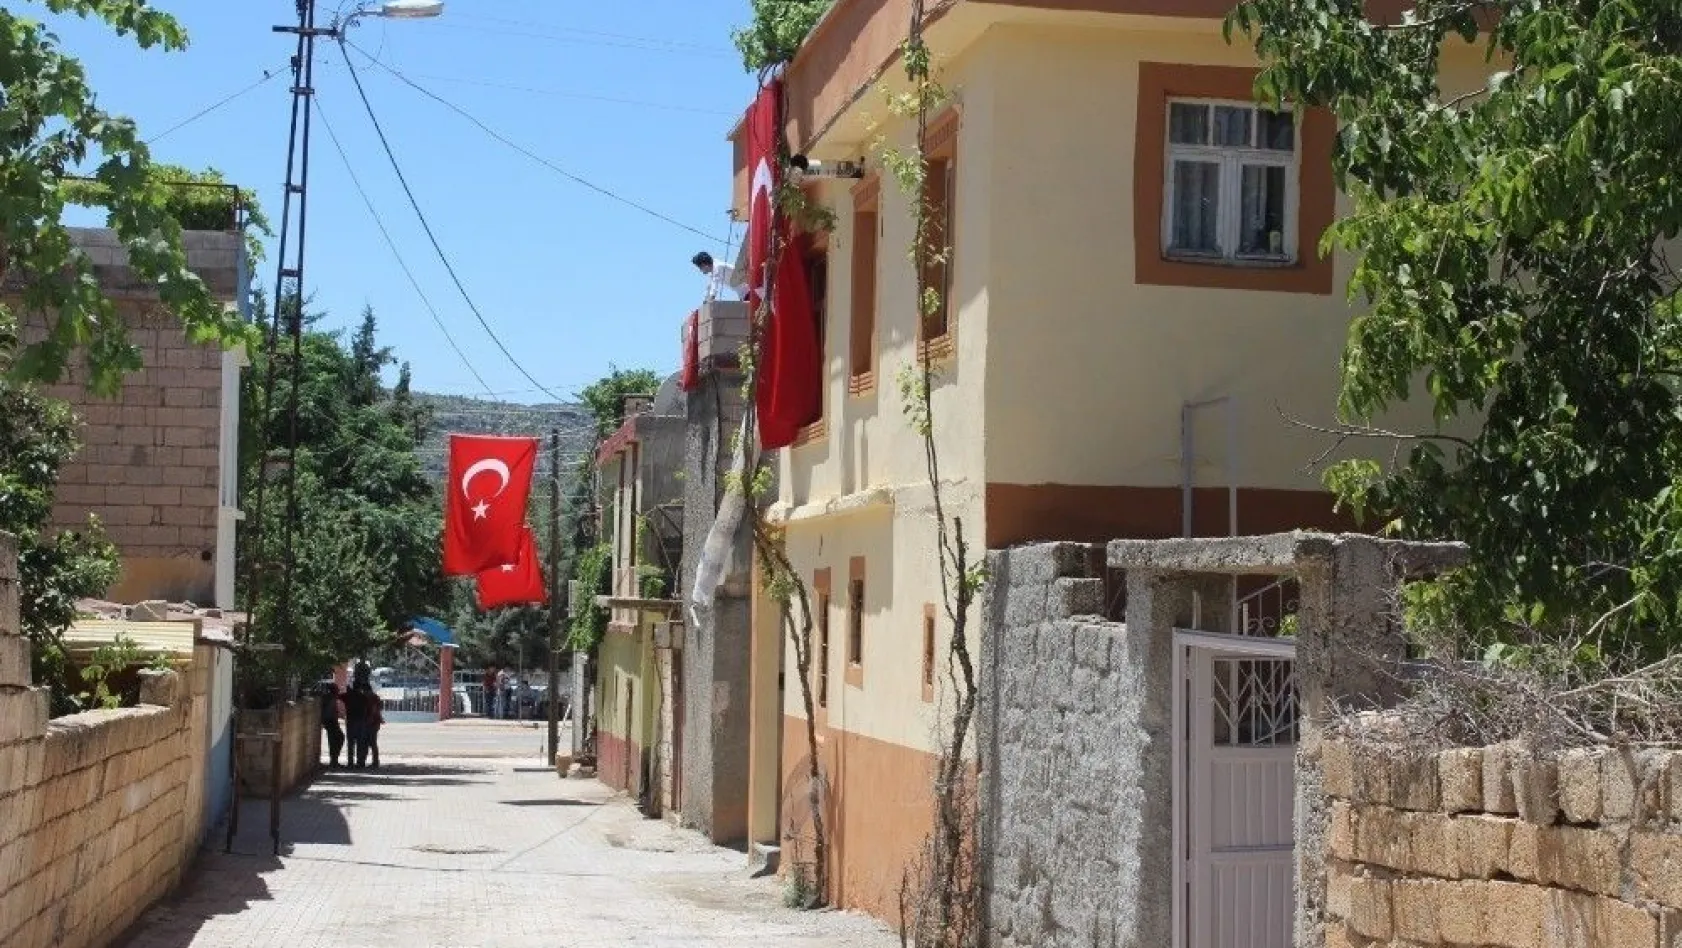 Adıyamanlı şehidin evine ve sokaklara Türk bayrakları asıldı
